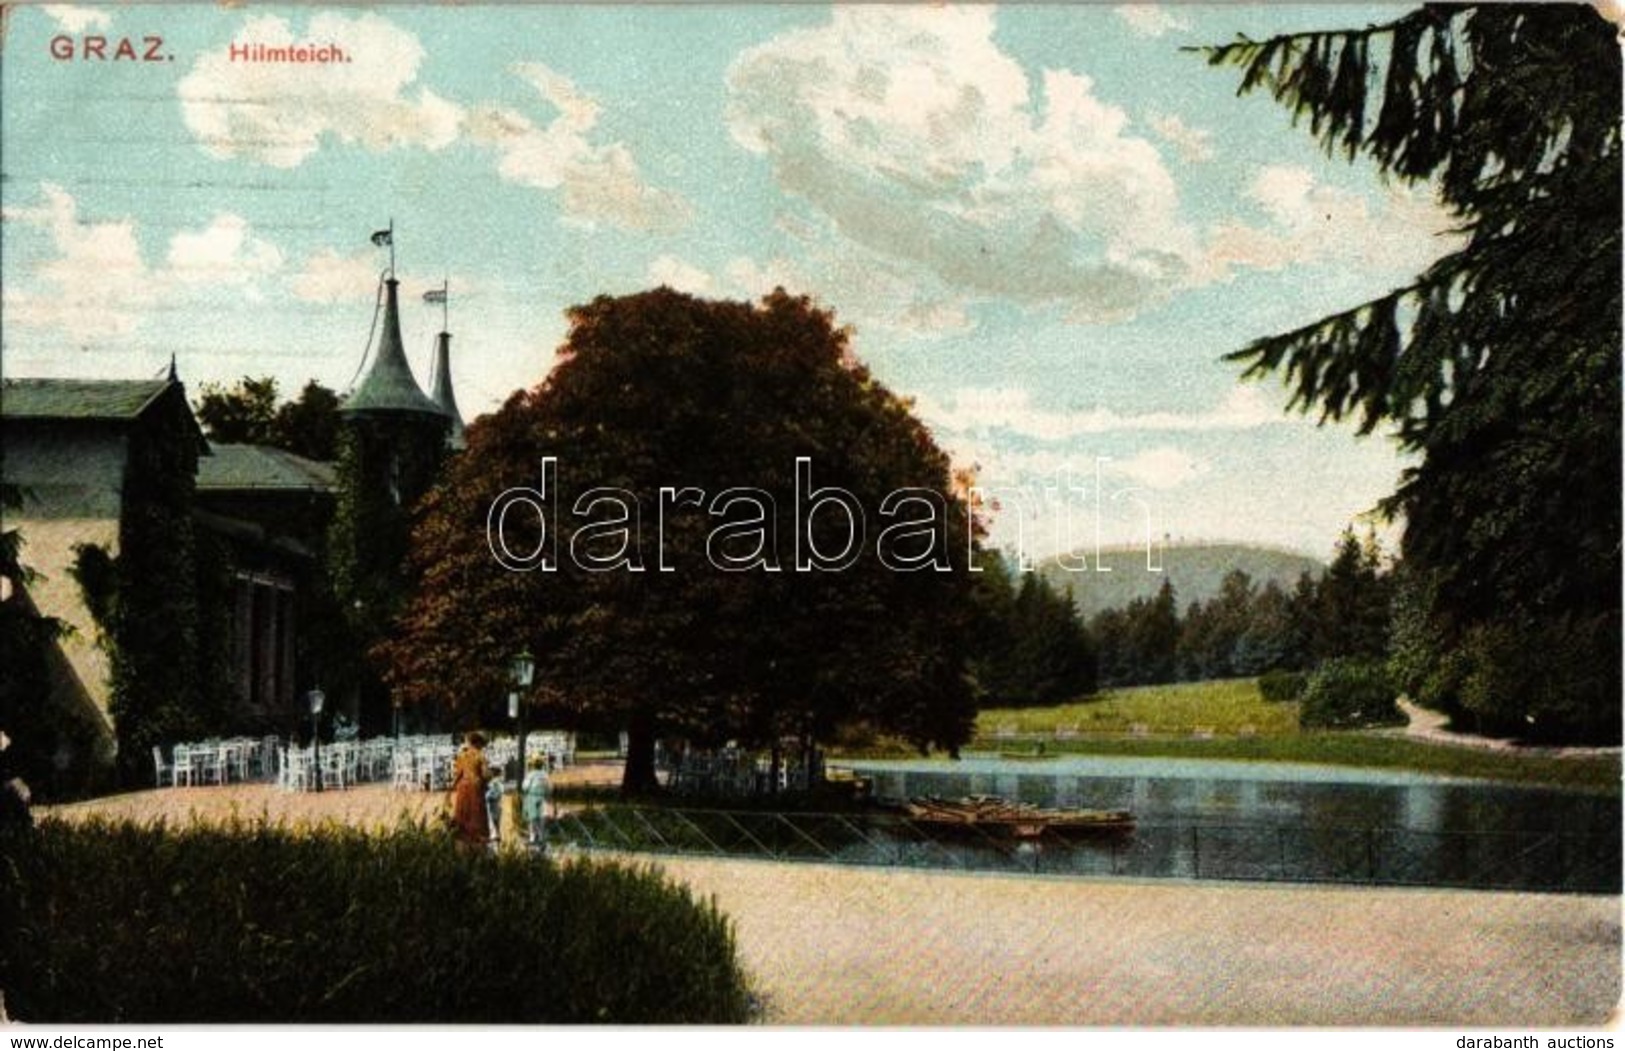 T2 1908 Graz, Himteich / Lake, Rowing Boats - Unclassified